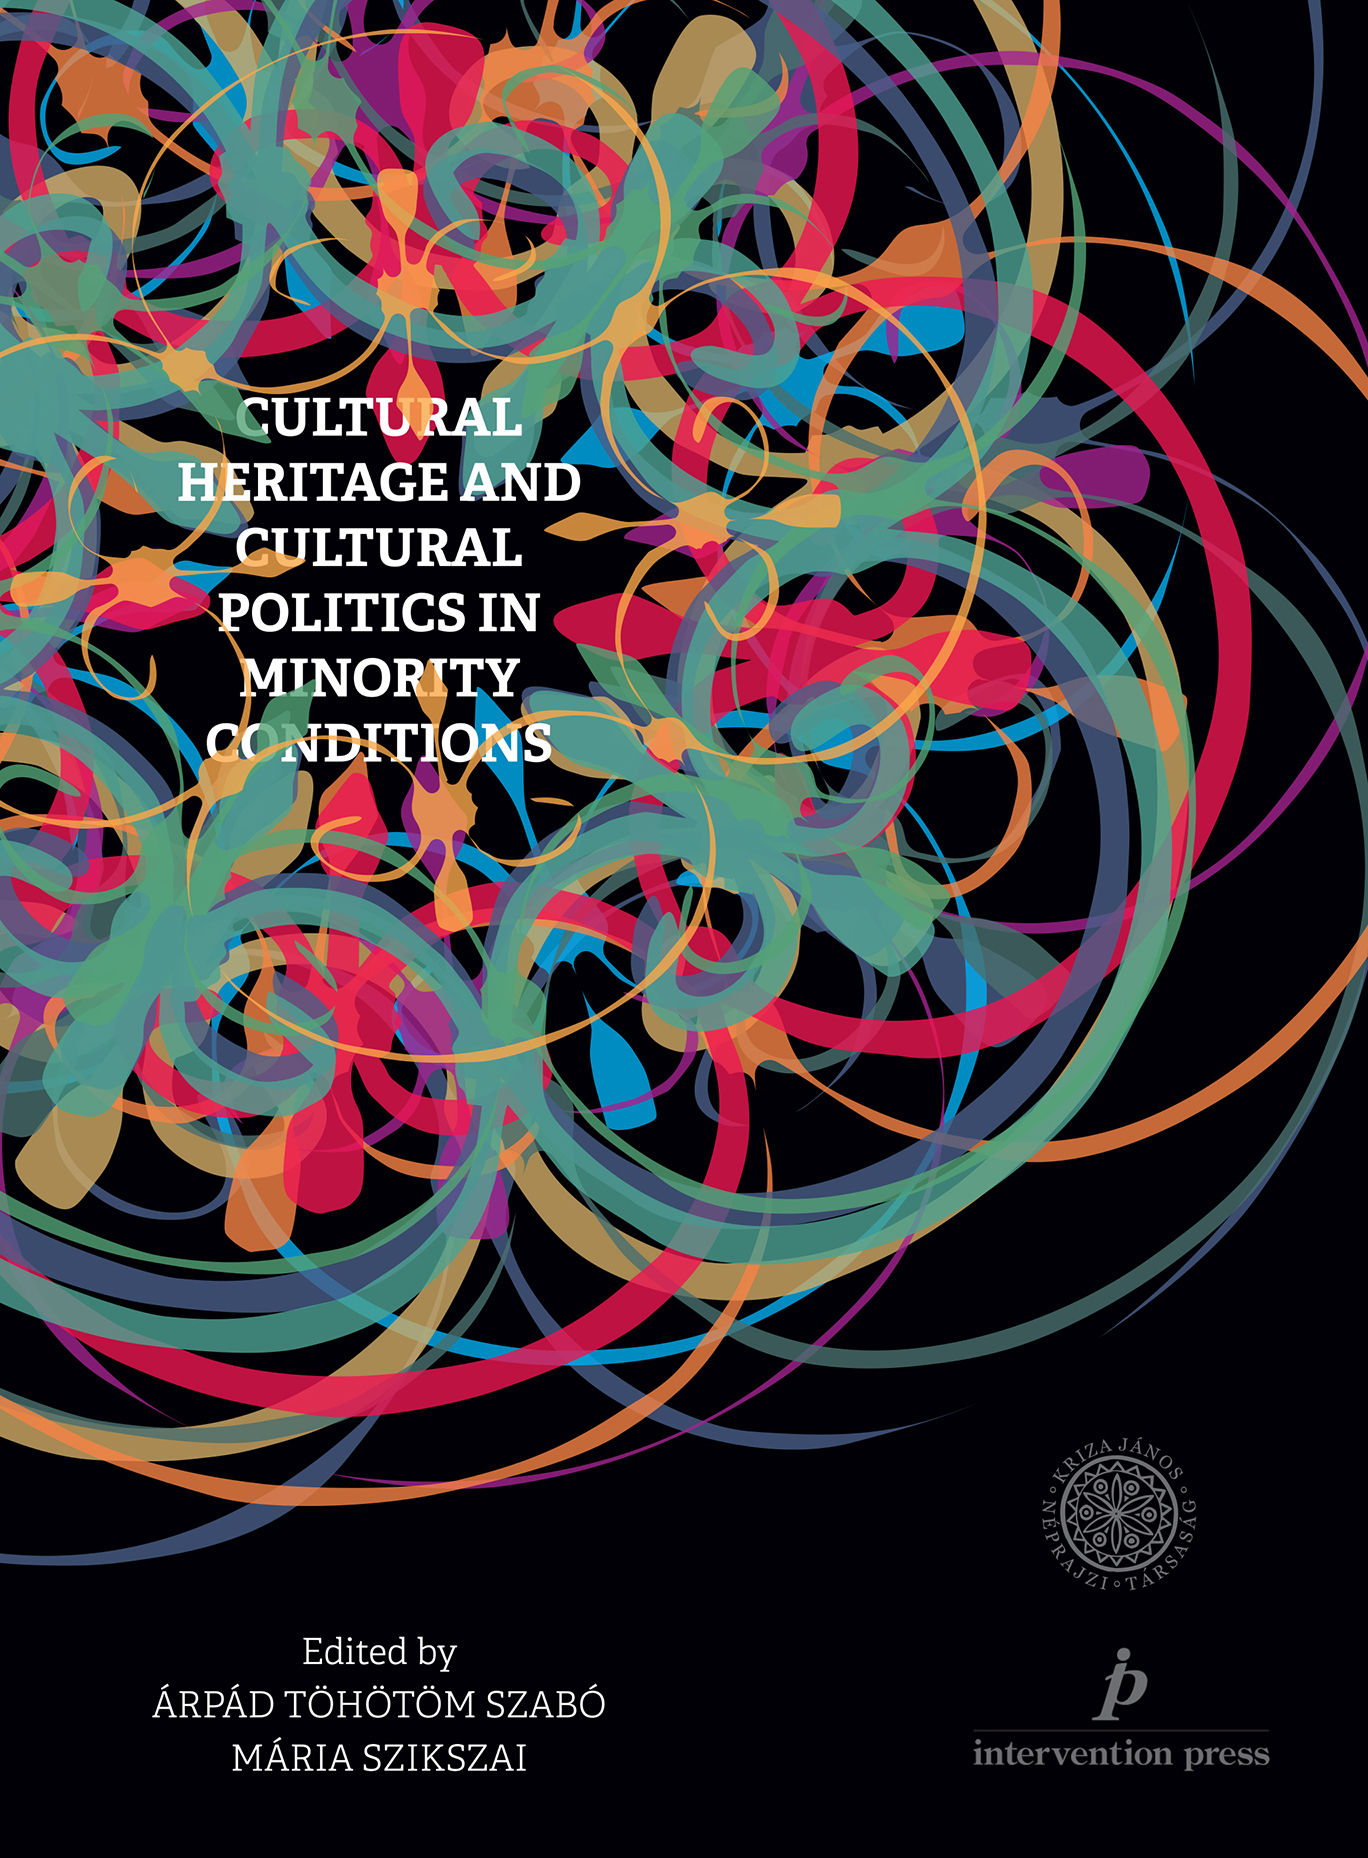 [Kulturális örökség és örökségdiskurzusok kisebbségi léthelyzetben] Cultural Heritage and Cultural Politics in Minority Conditions